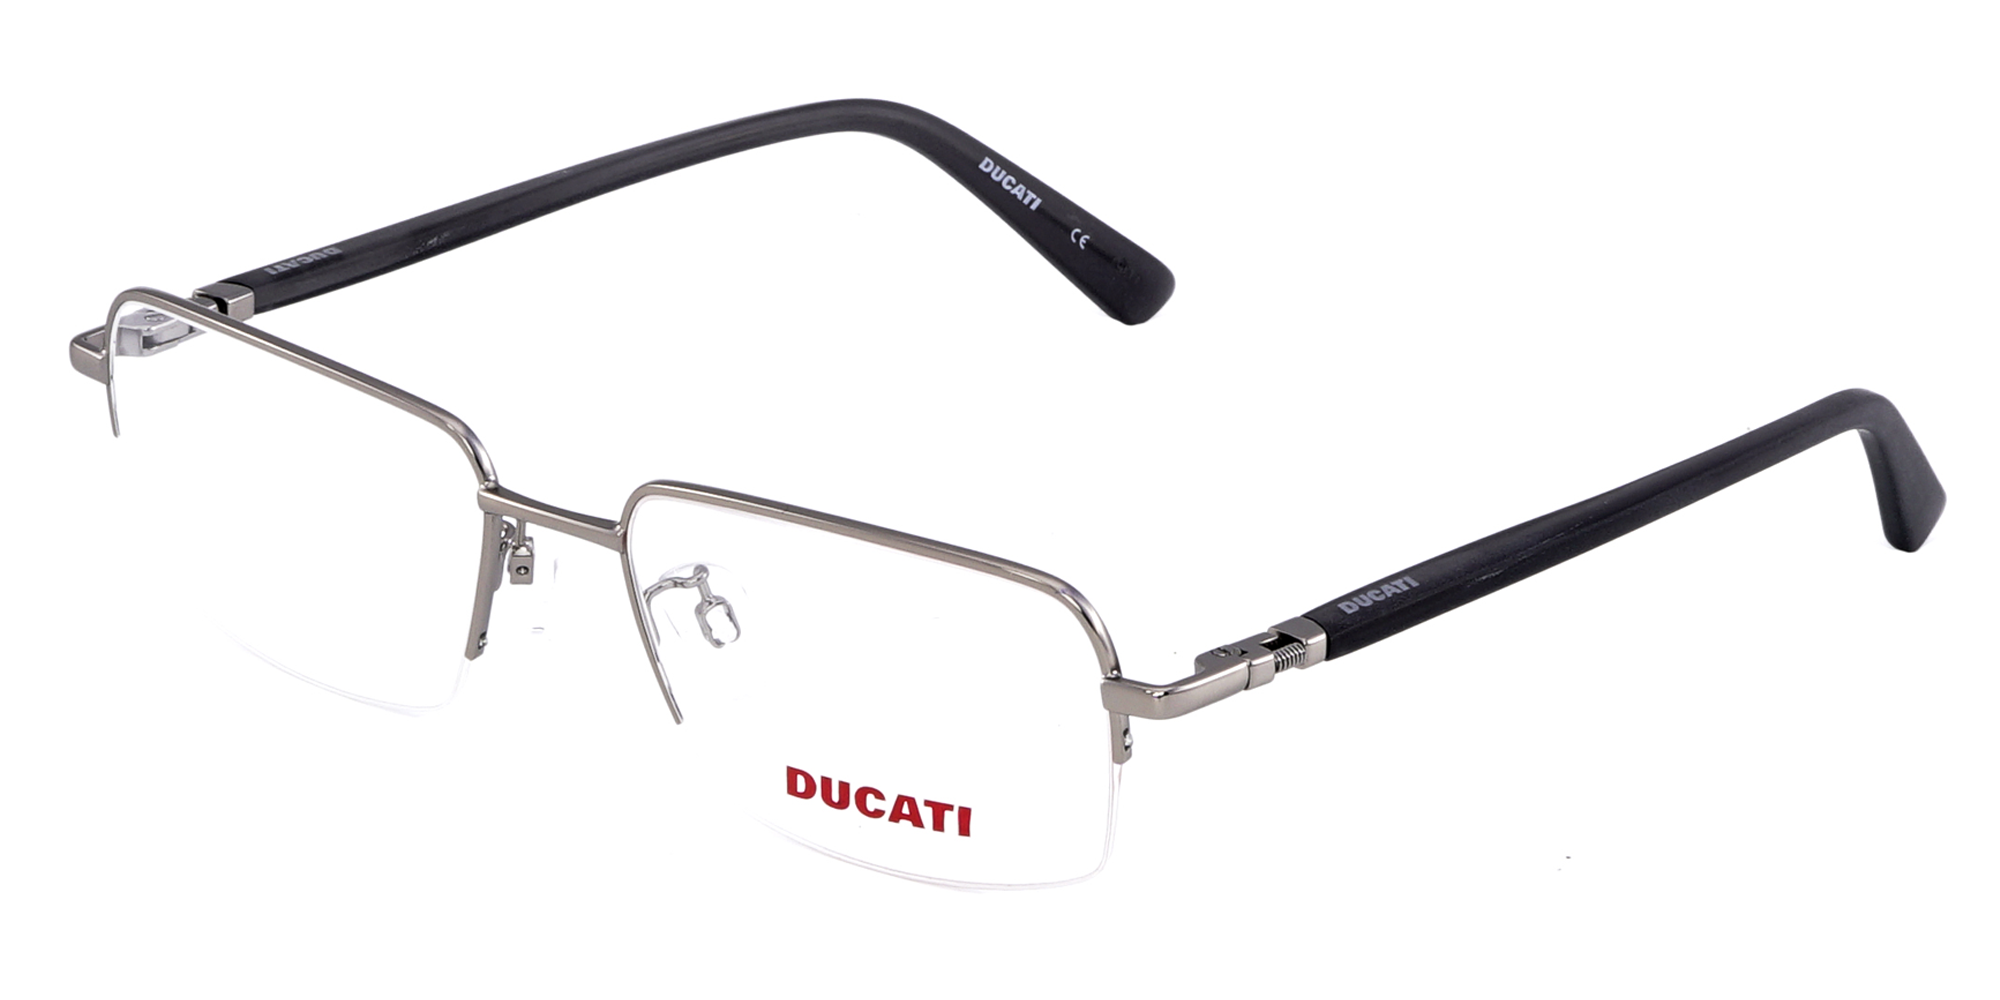 Gọng kính thể thao Ducati chính hãng DA3015-1 900